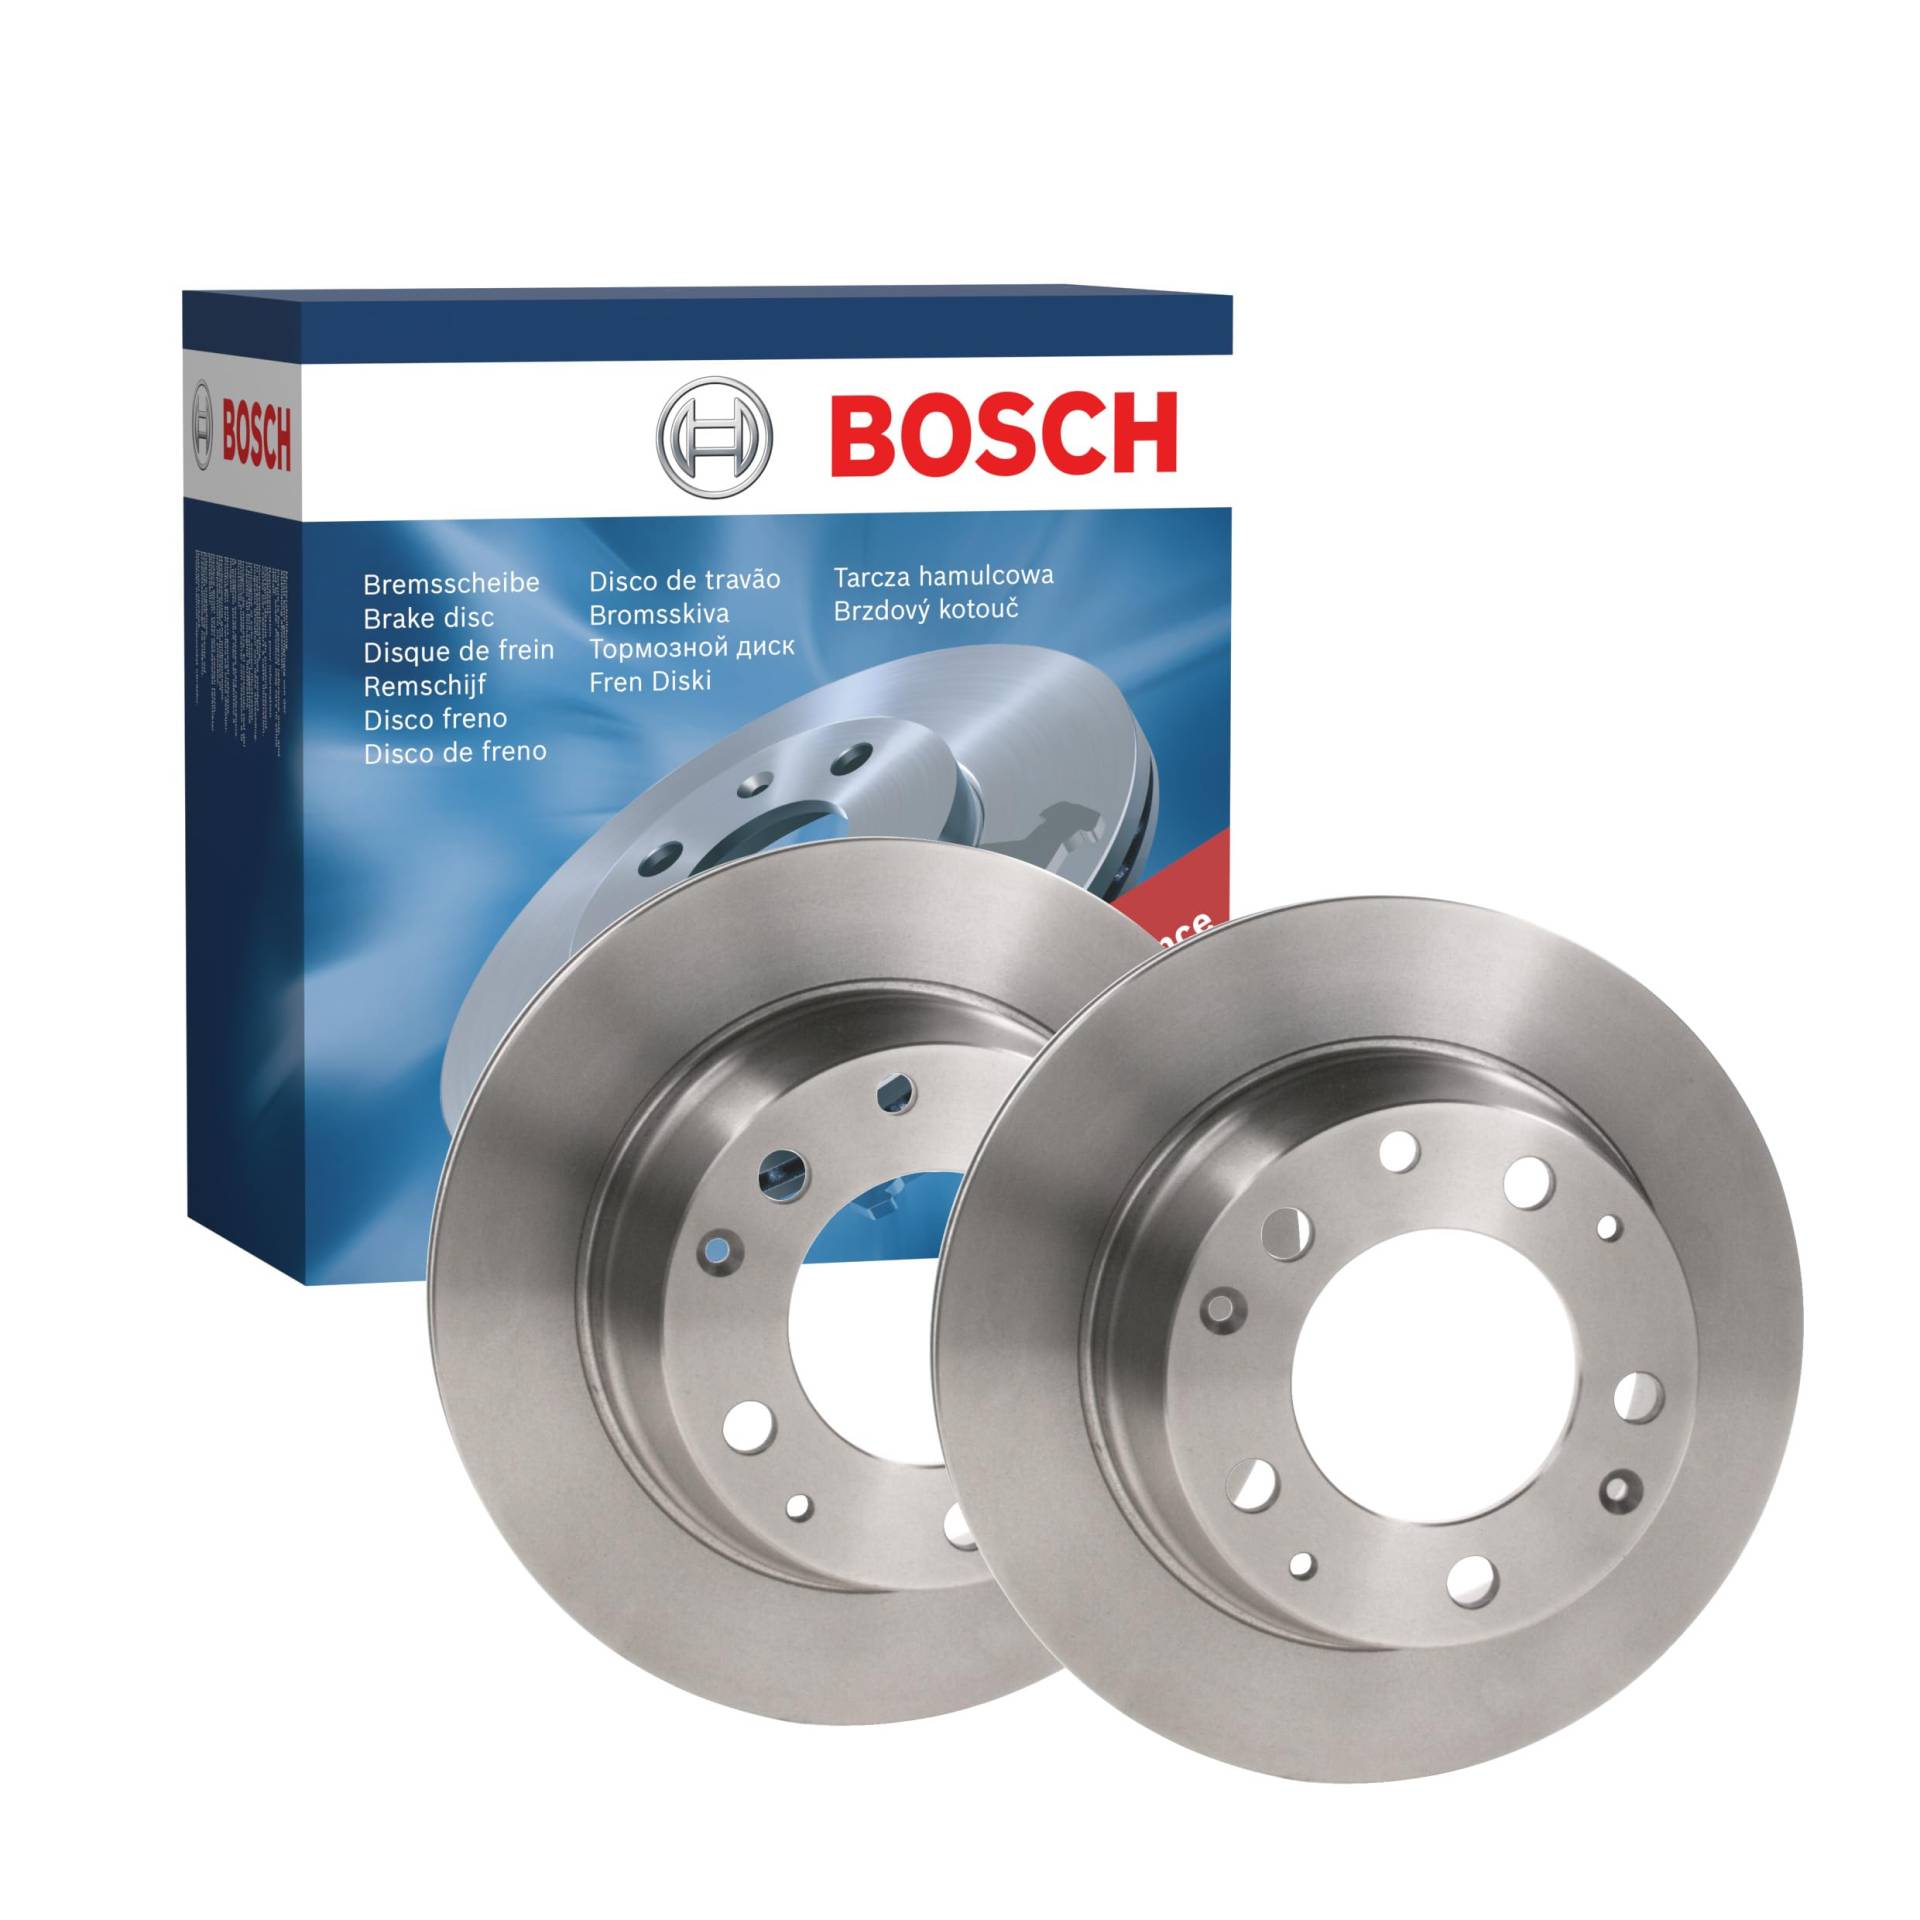 Bosch BD87 Bremsscheiben - Hinterachse - ECE-R90 Zertifizierung - zwei Bremsscheiben pro Set von Bosch Automotive